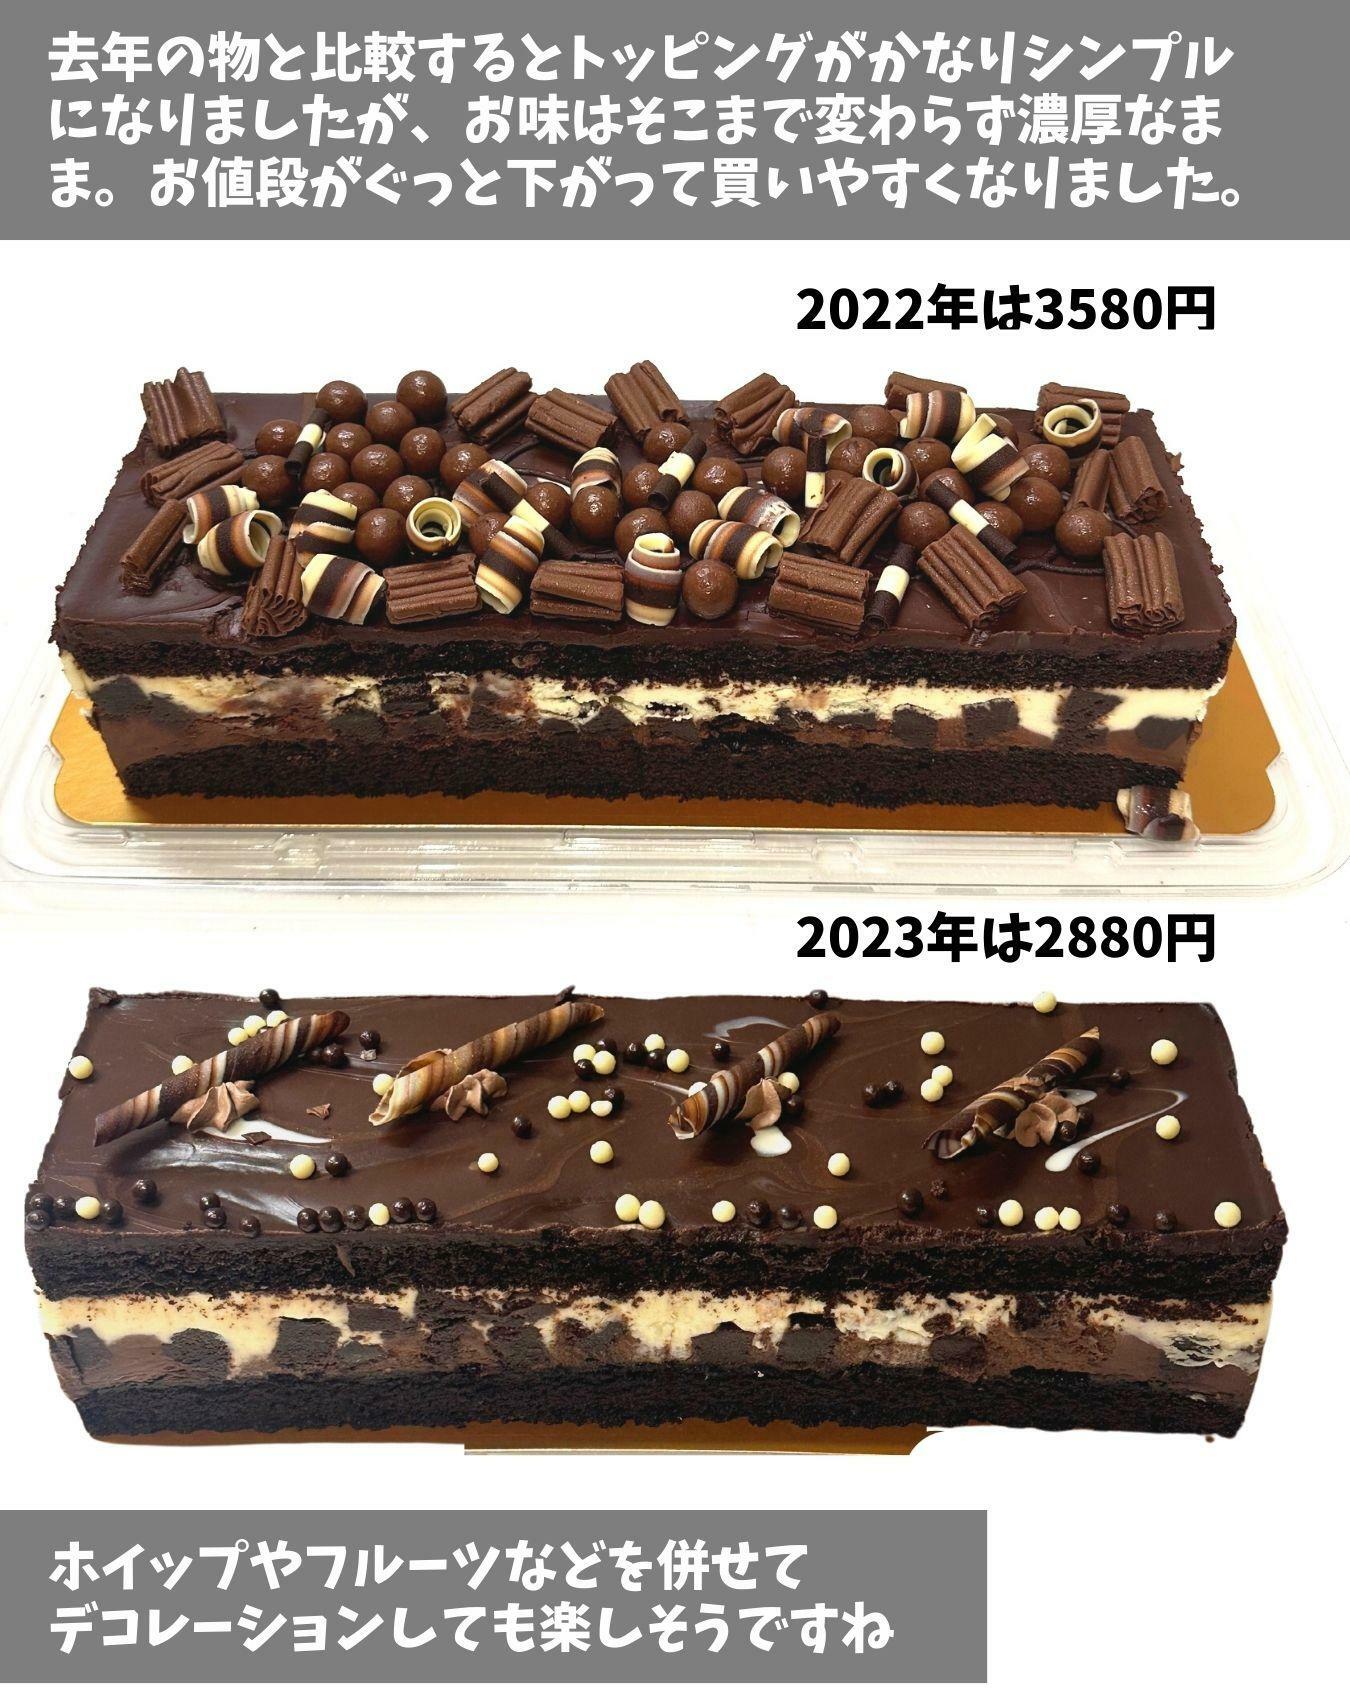 コストコのタキシードケーキは700円のお値下げ